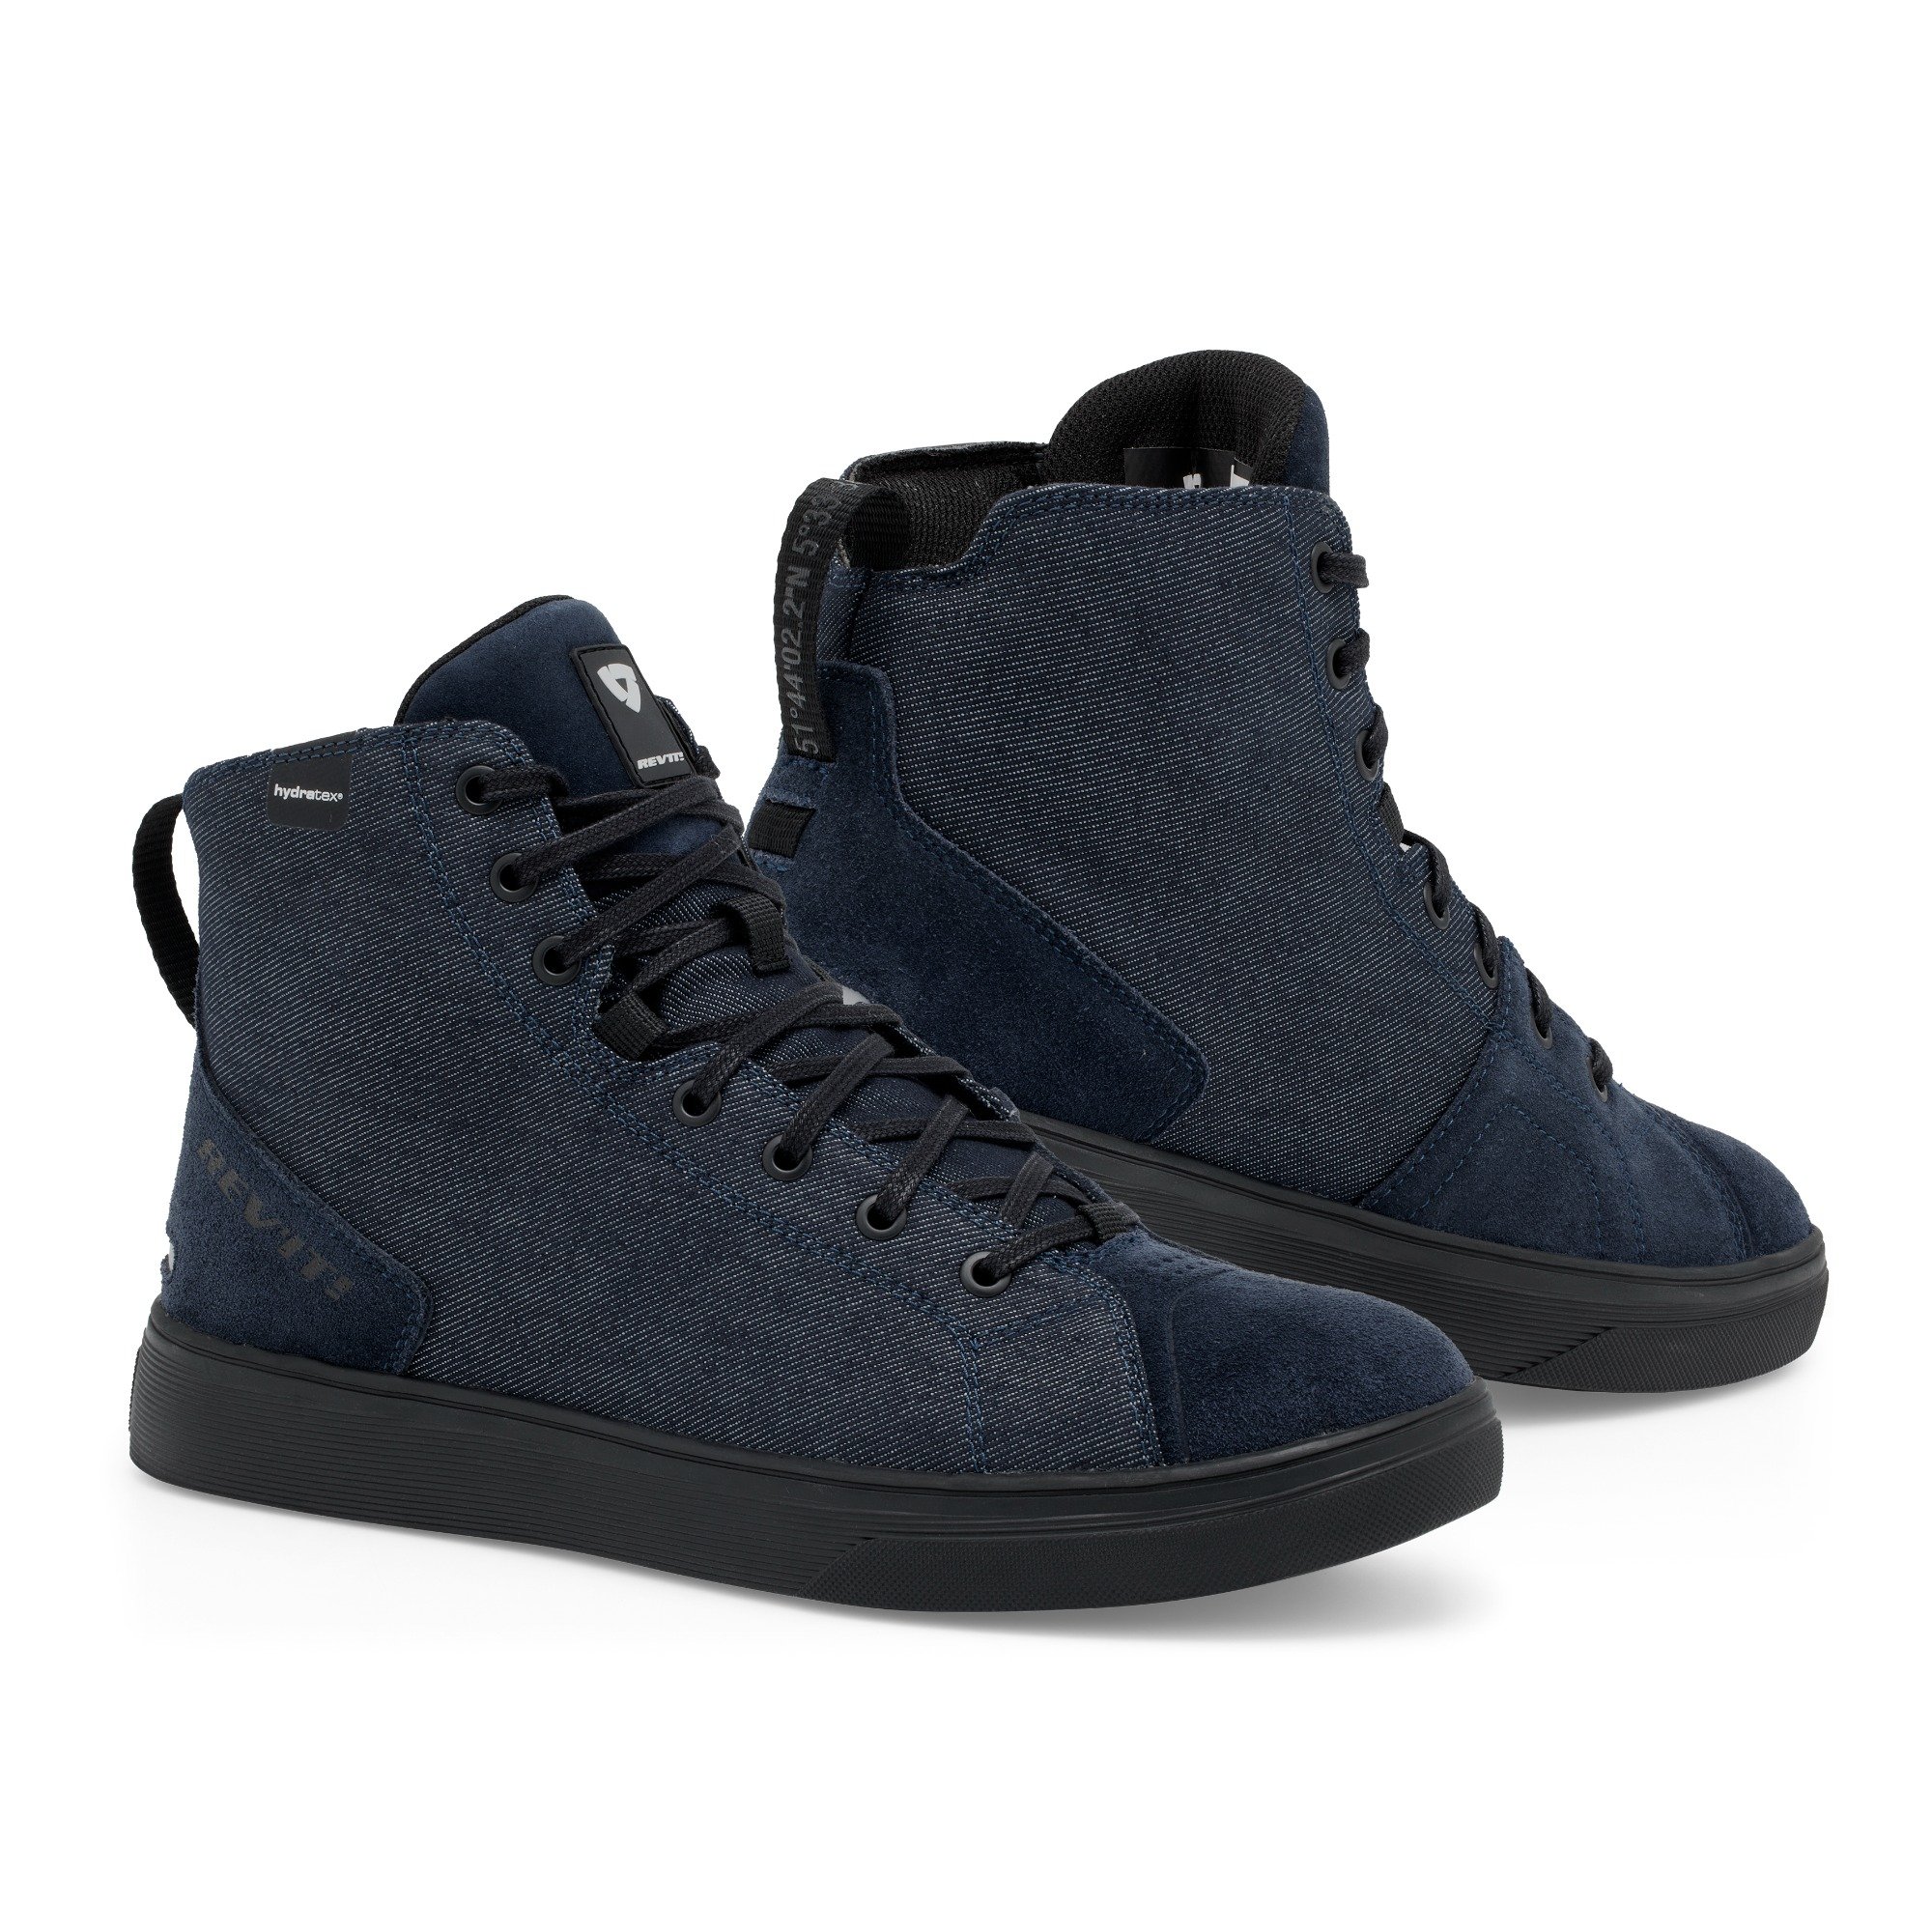 Image of REV'IT! Delta H2O Chaussures Foncé Bleu Noir Taille 47